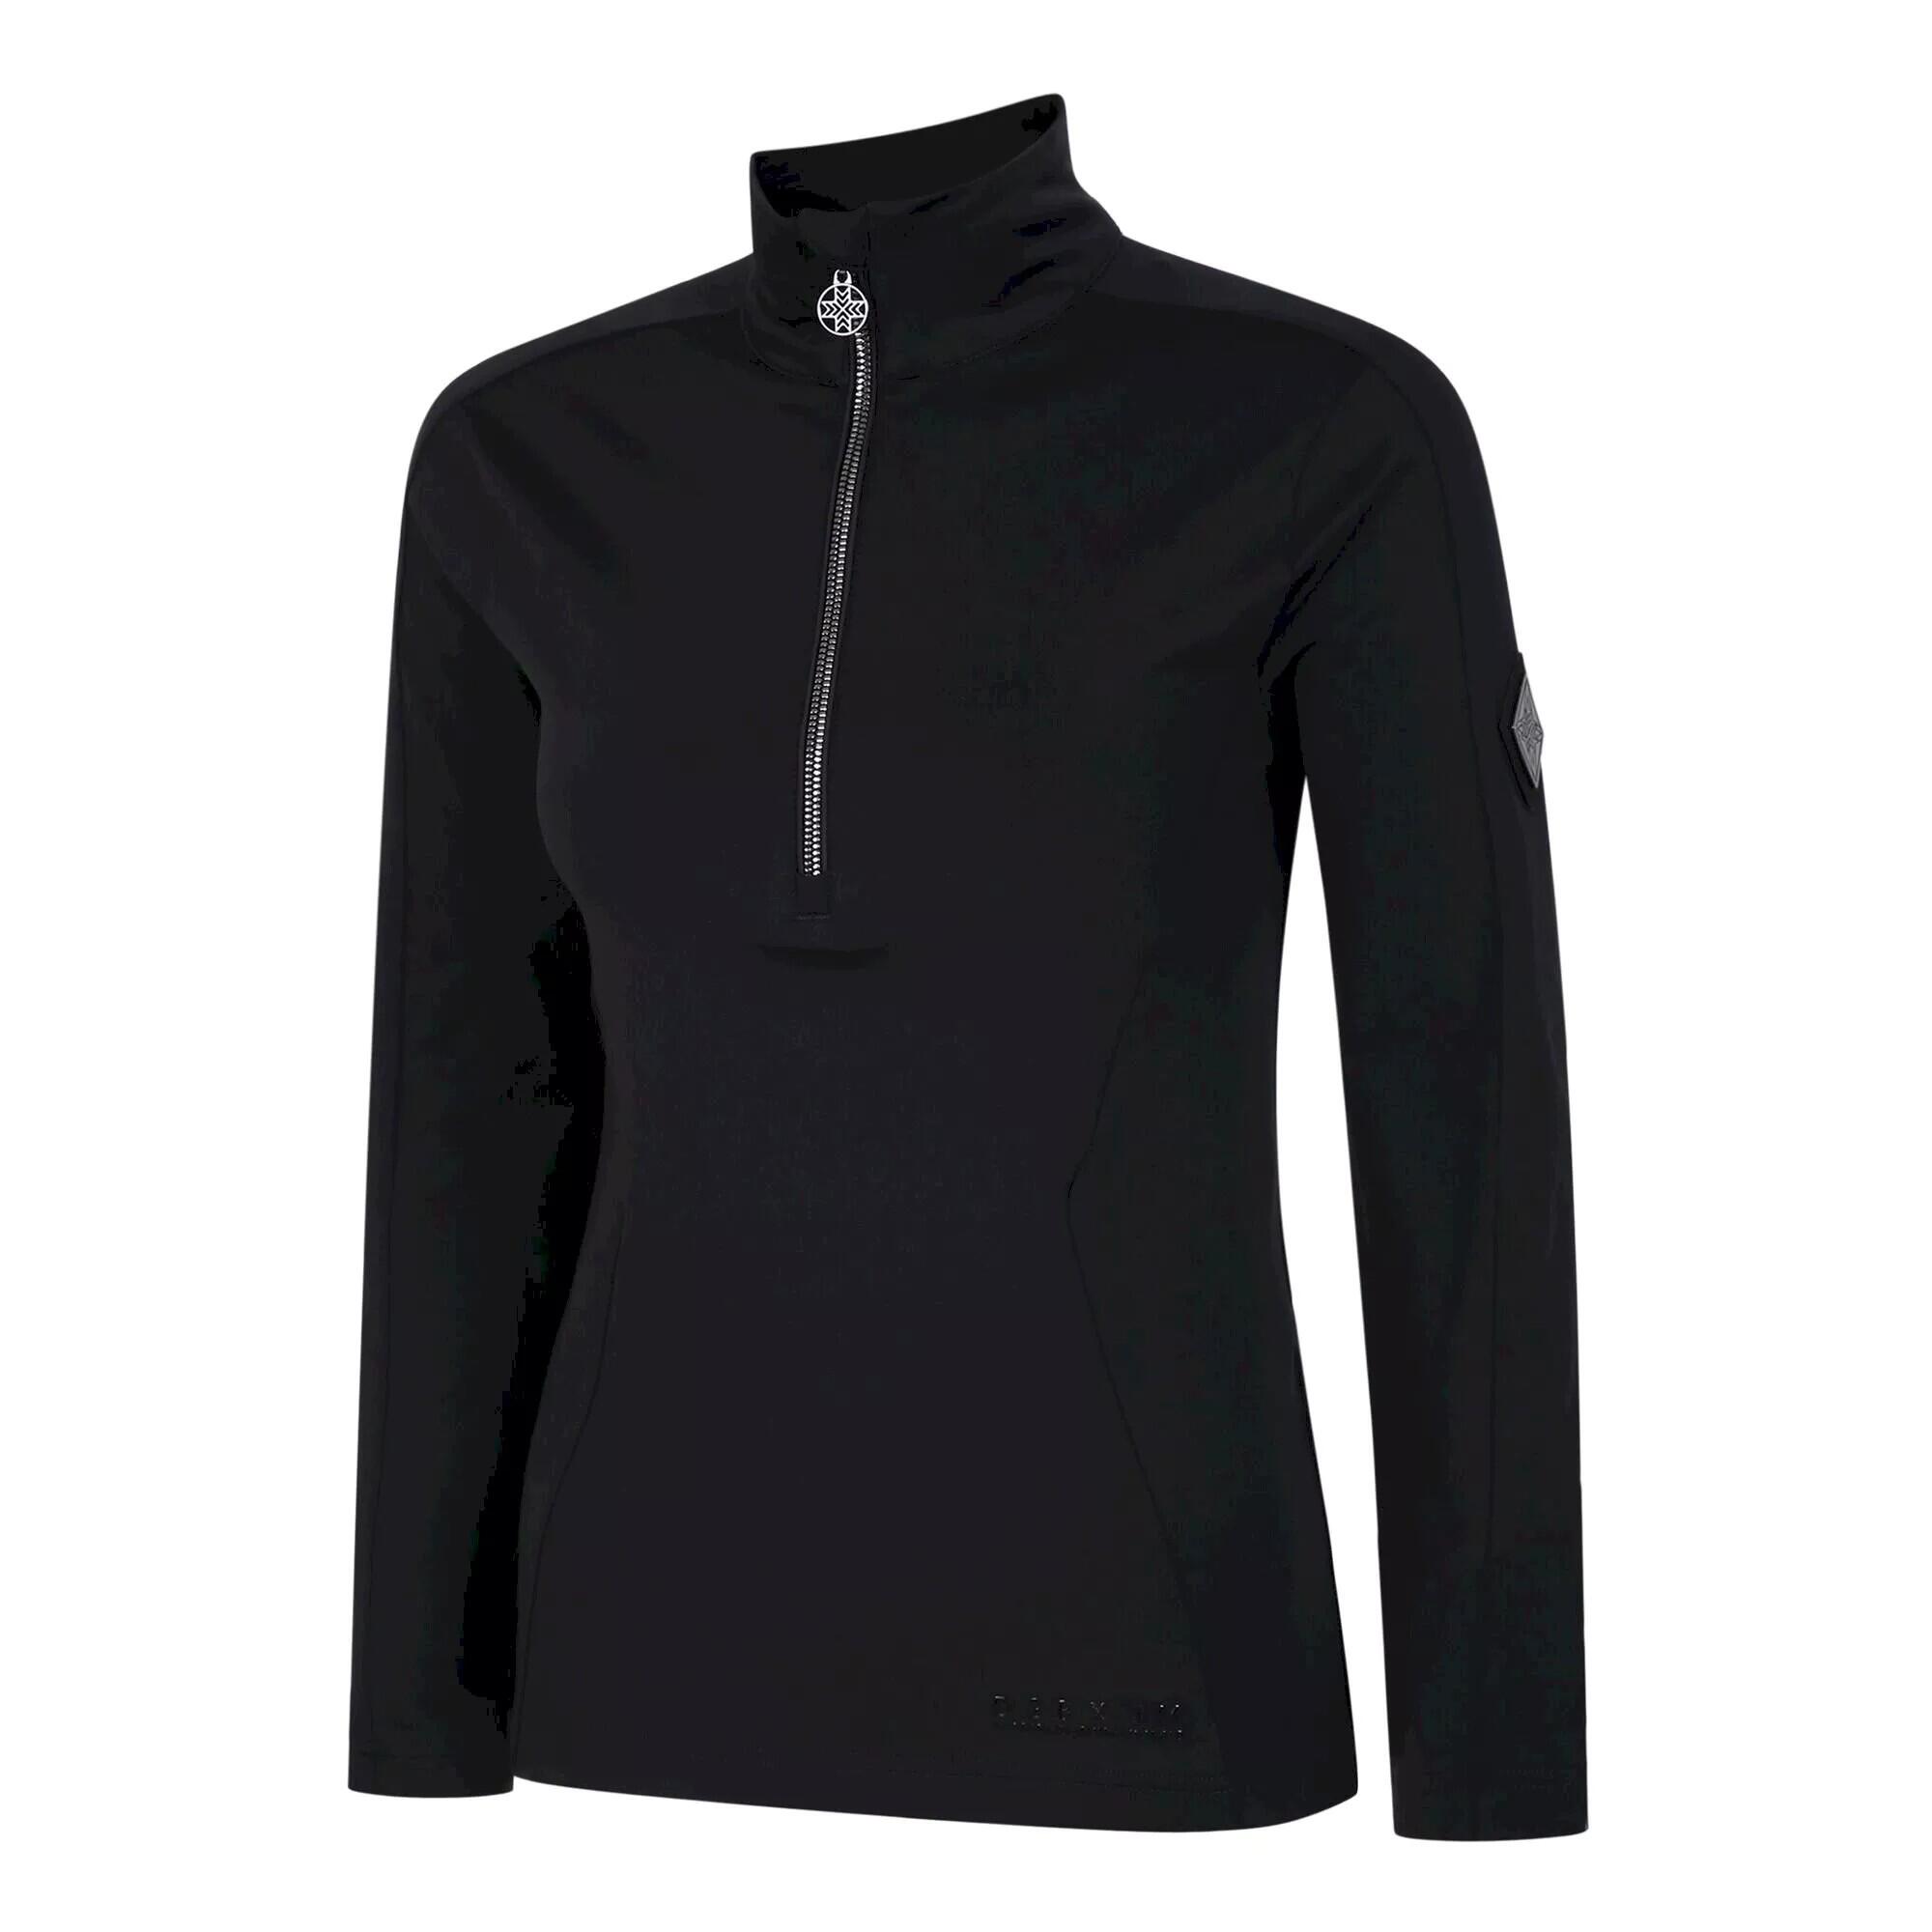 Womens/Ladies Julian Macdonald Excursive Half Zip Fleece Top (Black) 3/5